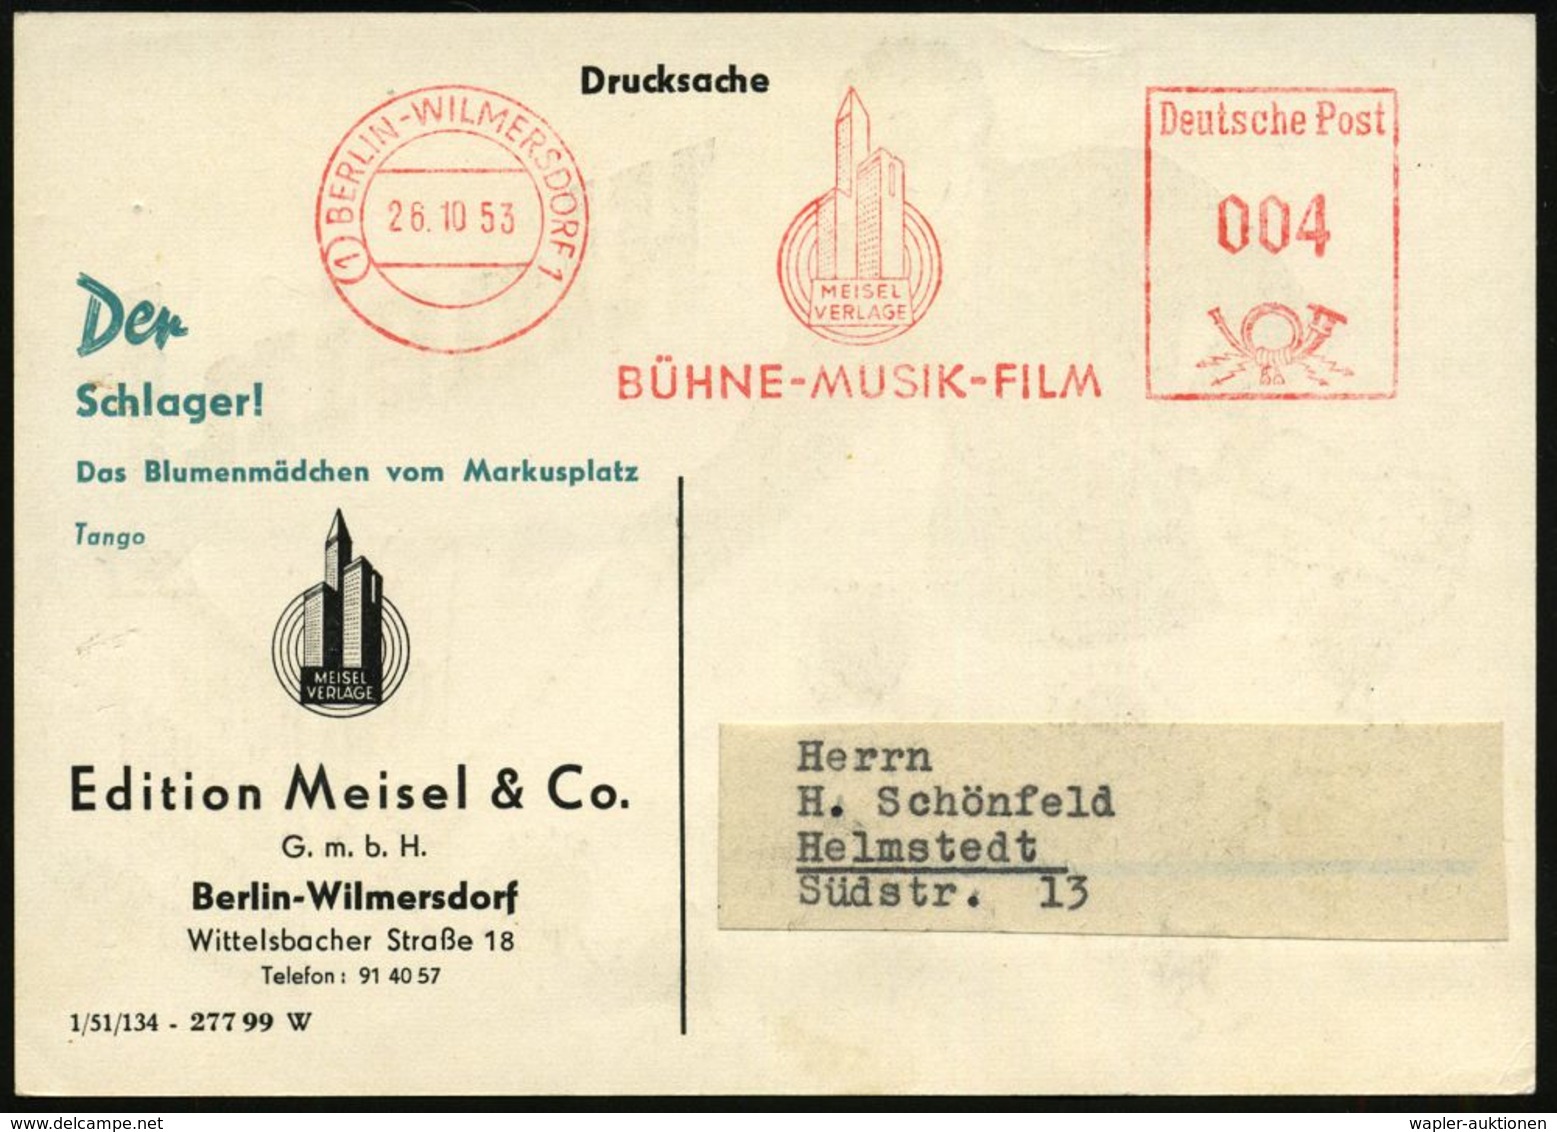 MUSIK-VERLAGE : (1) BERLIN-WILMERSDORF1/ MEISEL/ VERLAGE/ BÜHNE-MUSIK-FILM 1953 (26.10.) AFS (Logo: Hochhäuser, Schall-w - Musica